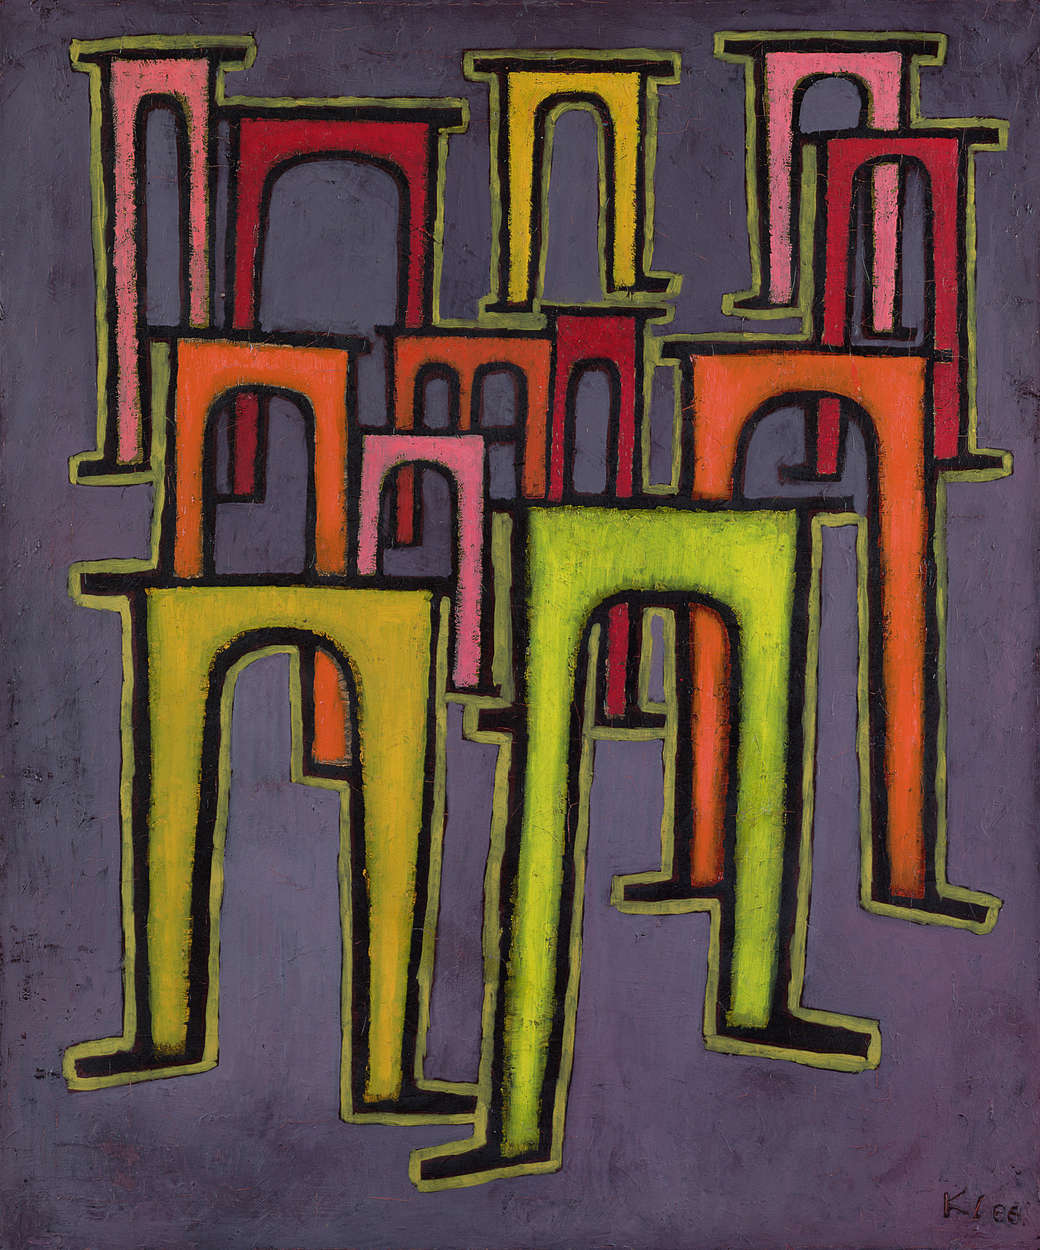             Mural "Revolución del Viaducto" de Paul Klee
        